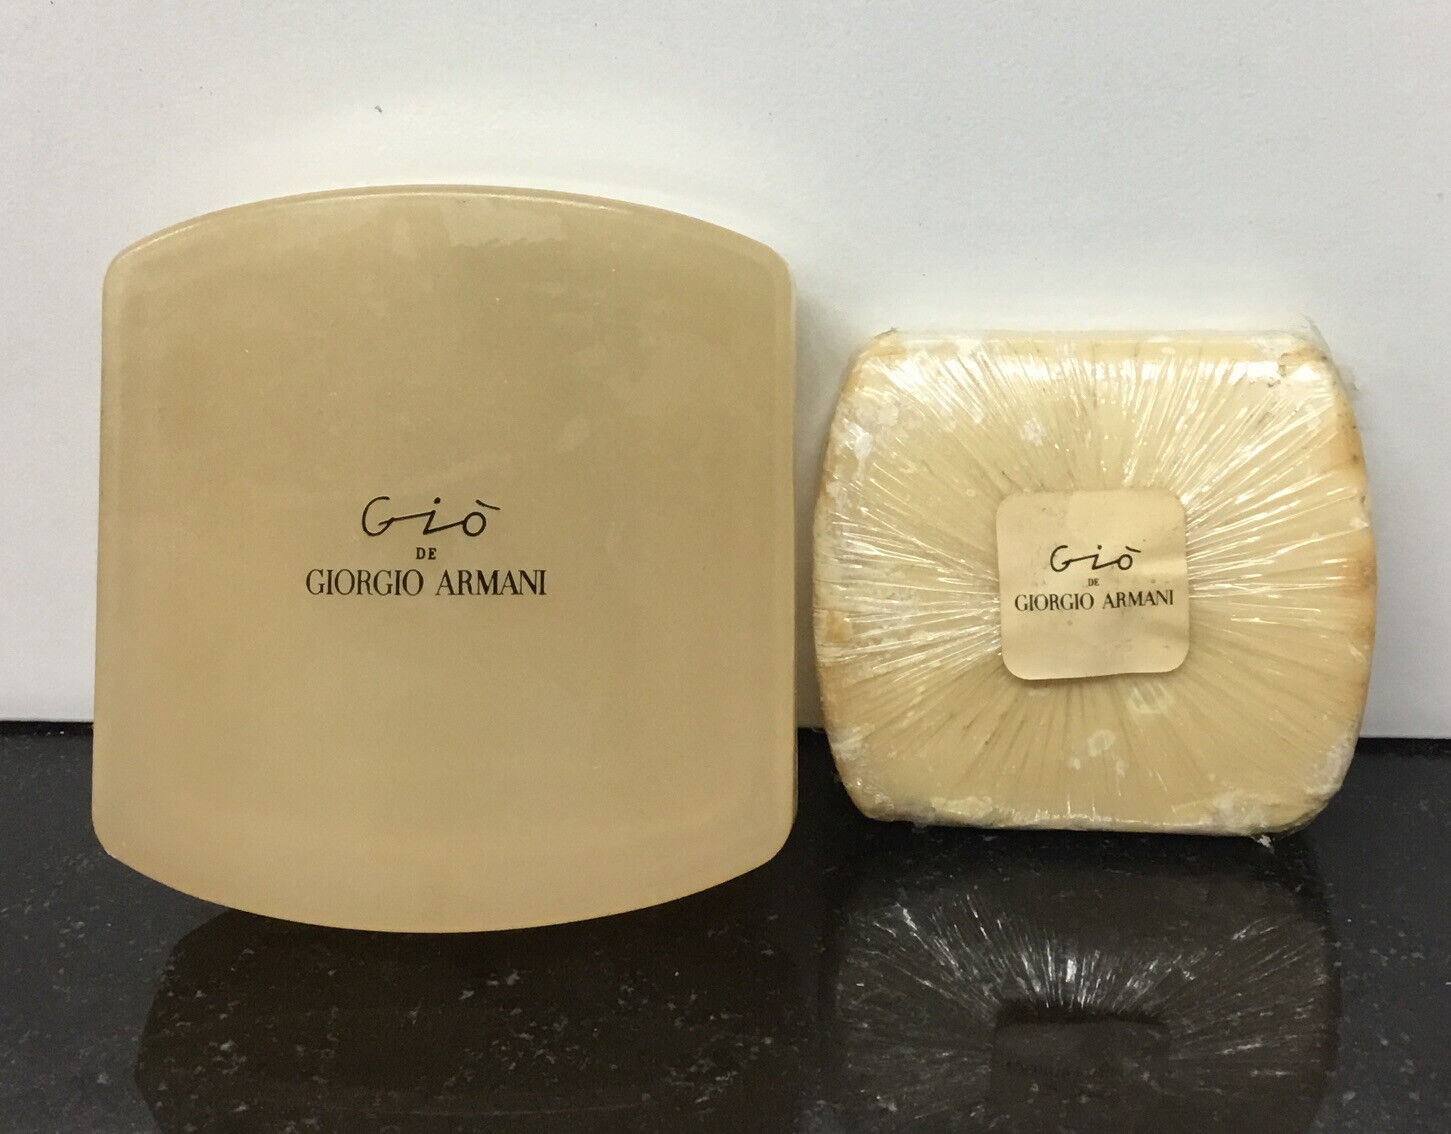 Gio 'De Giorgio Armani Bath Soap 3.5 oz  RARE- AS PICTURED